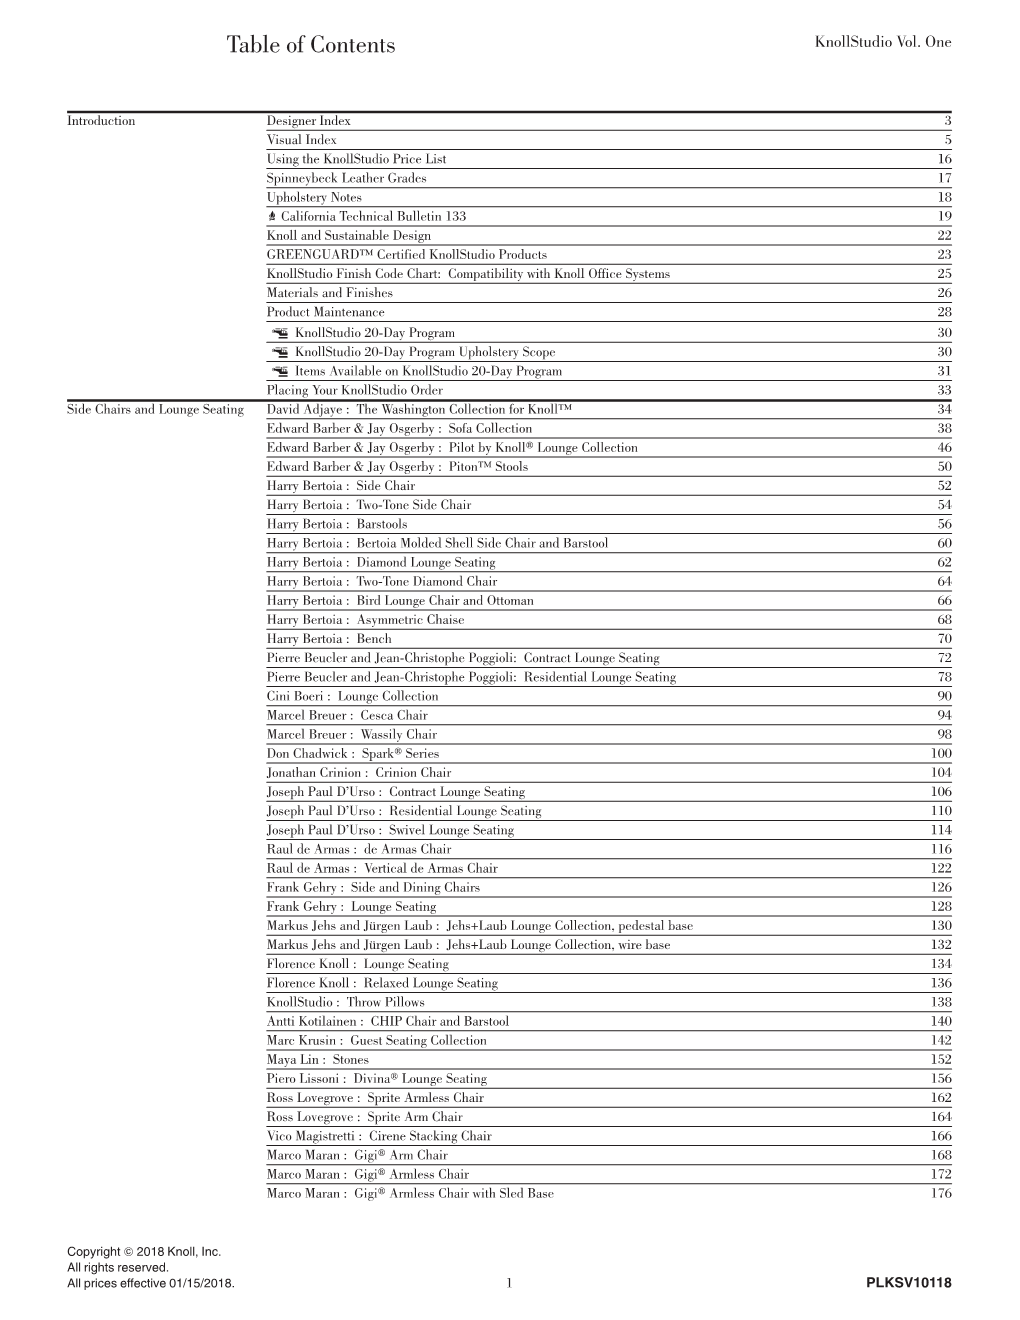 Table of Contents Knollstudio Vol